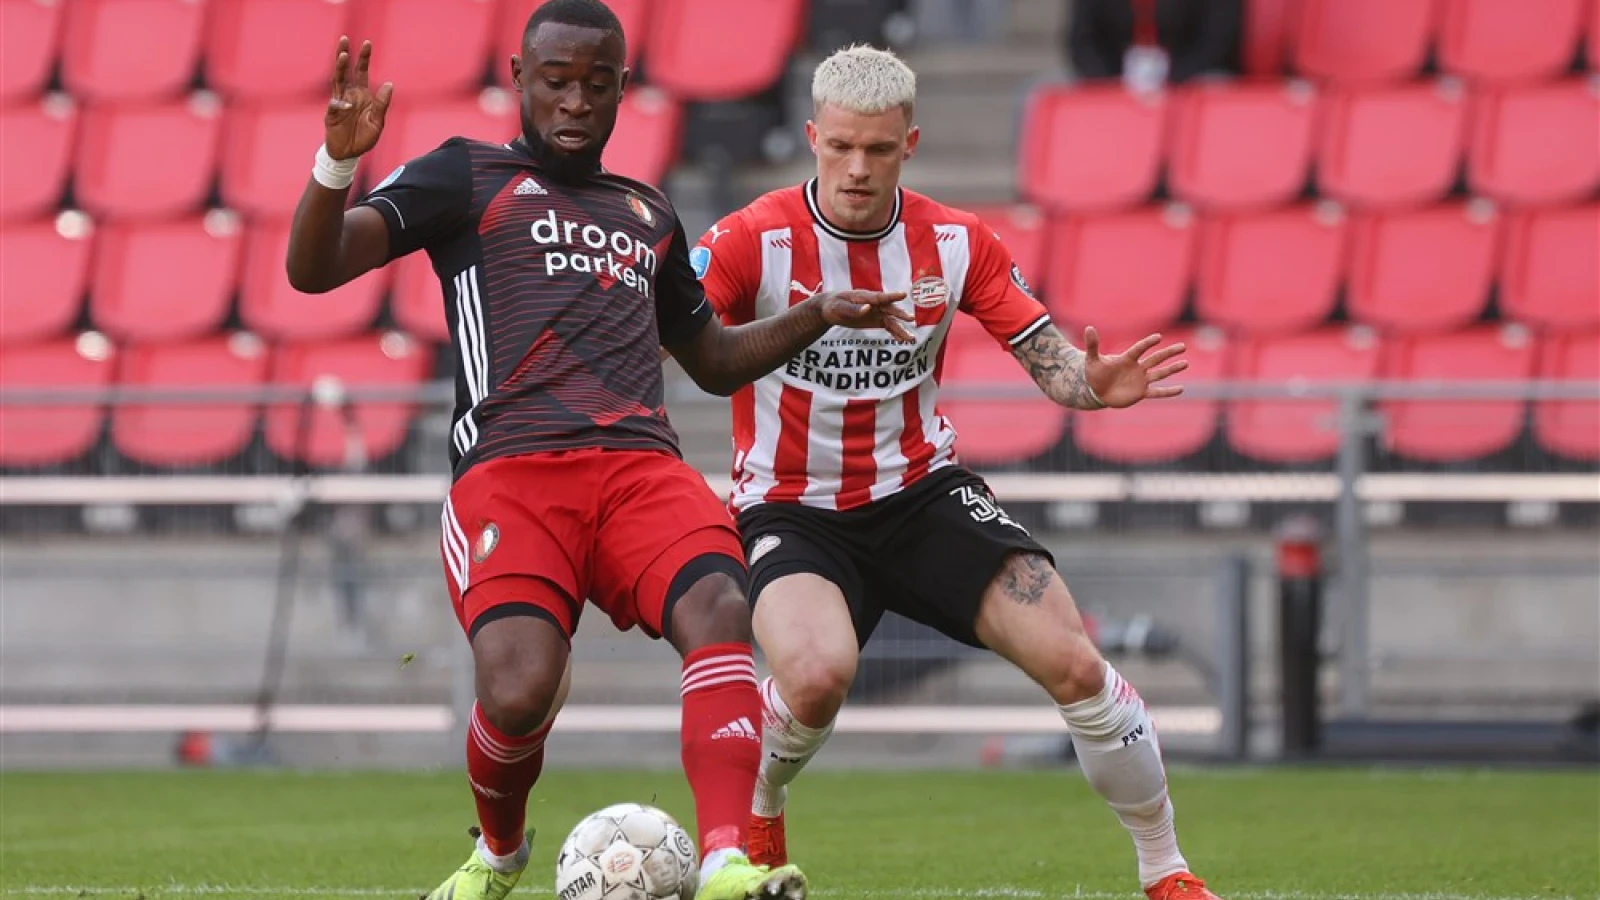 LIVE | PSV - Feyenoord 1-1 | Einde wedstrijd